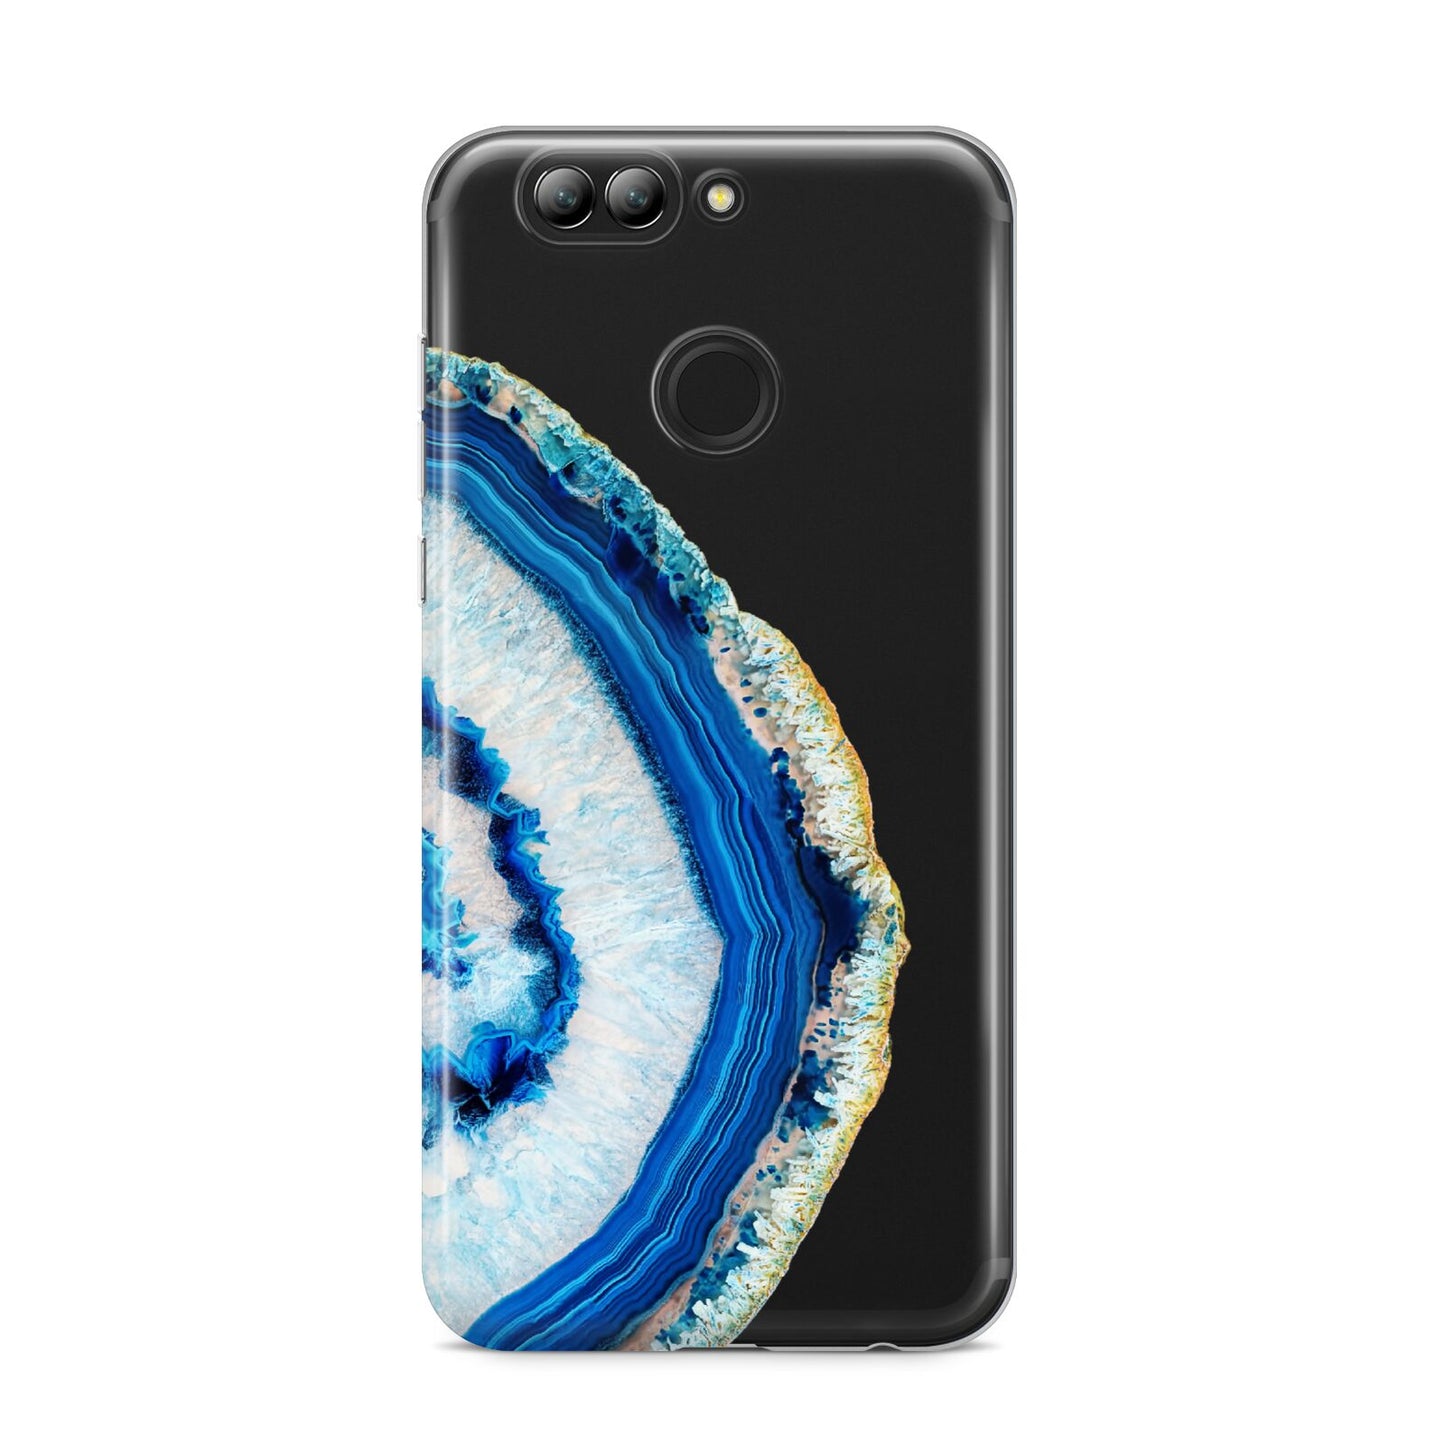 Agate Dark Blue and Turquoise Huawei Nova 2s Phone Case